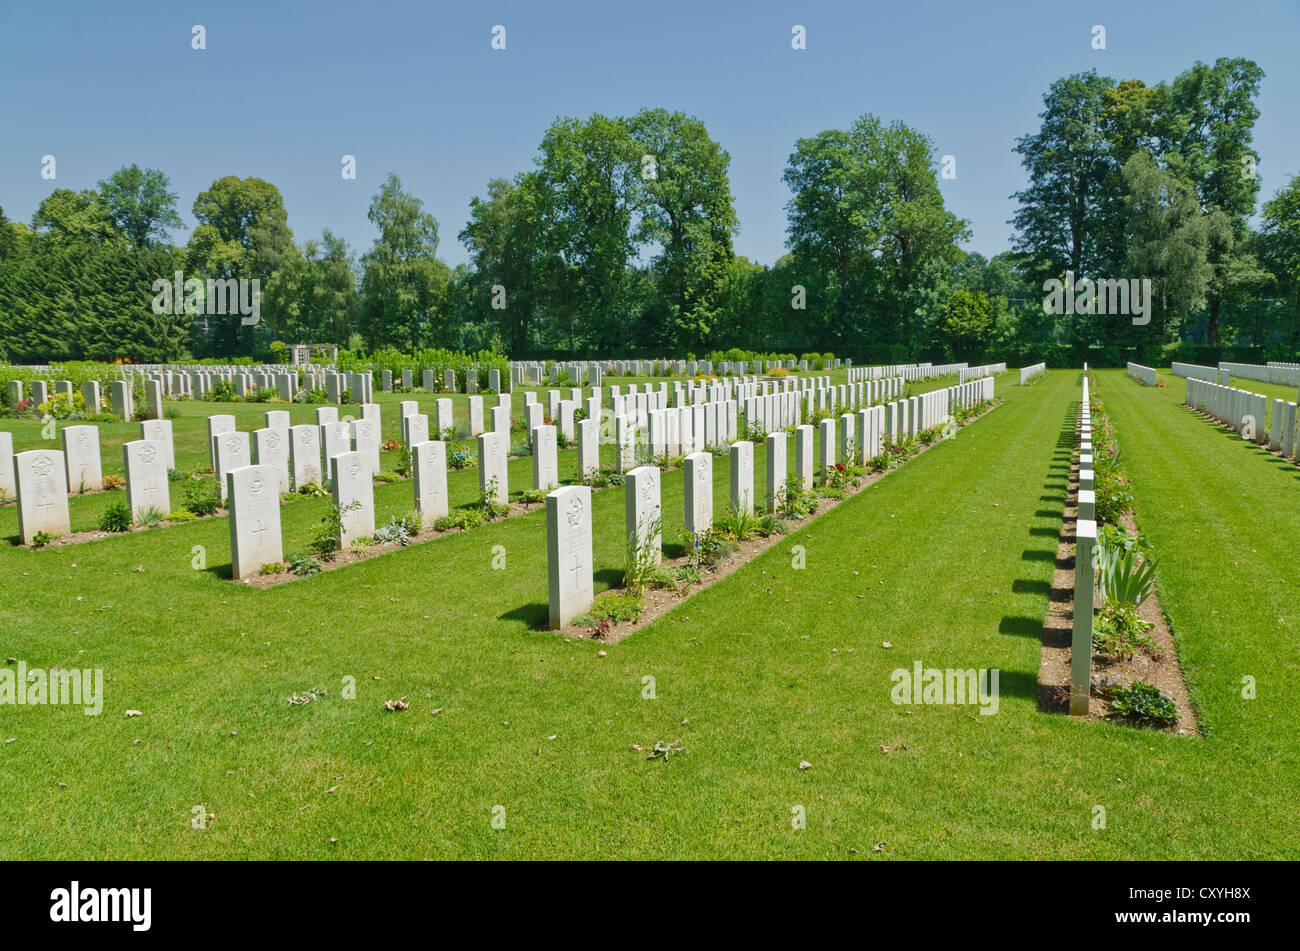 Cimetière de guerre Durnbach, le lieu de sépulture de 2960 soldats qui sont morts dans la SECONDE GUERRE MONDIALE, Duernbach, Gmund am Tegernsee, Bavière Banque D'Images